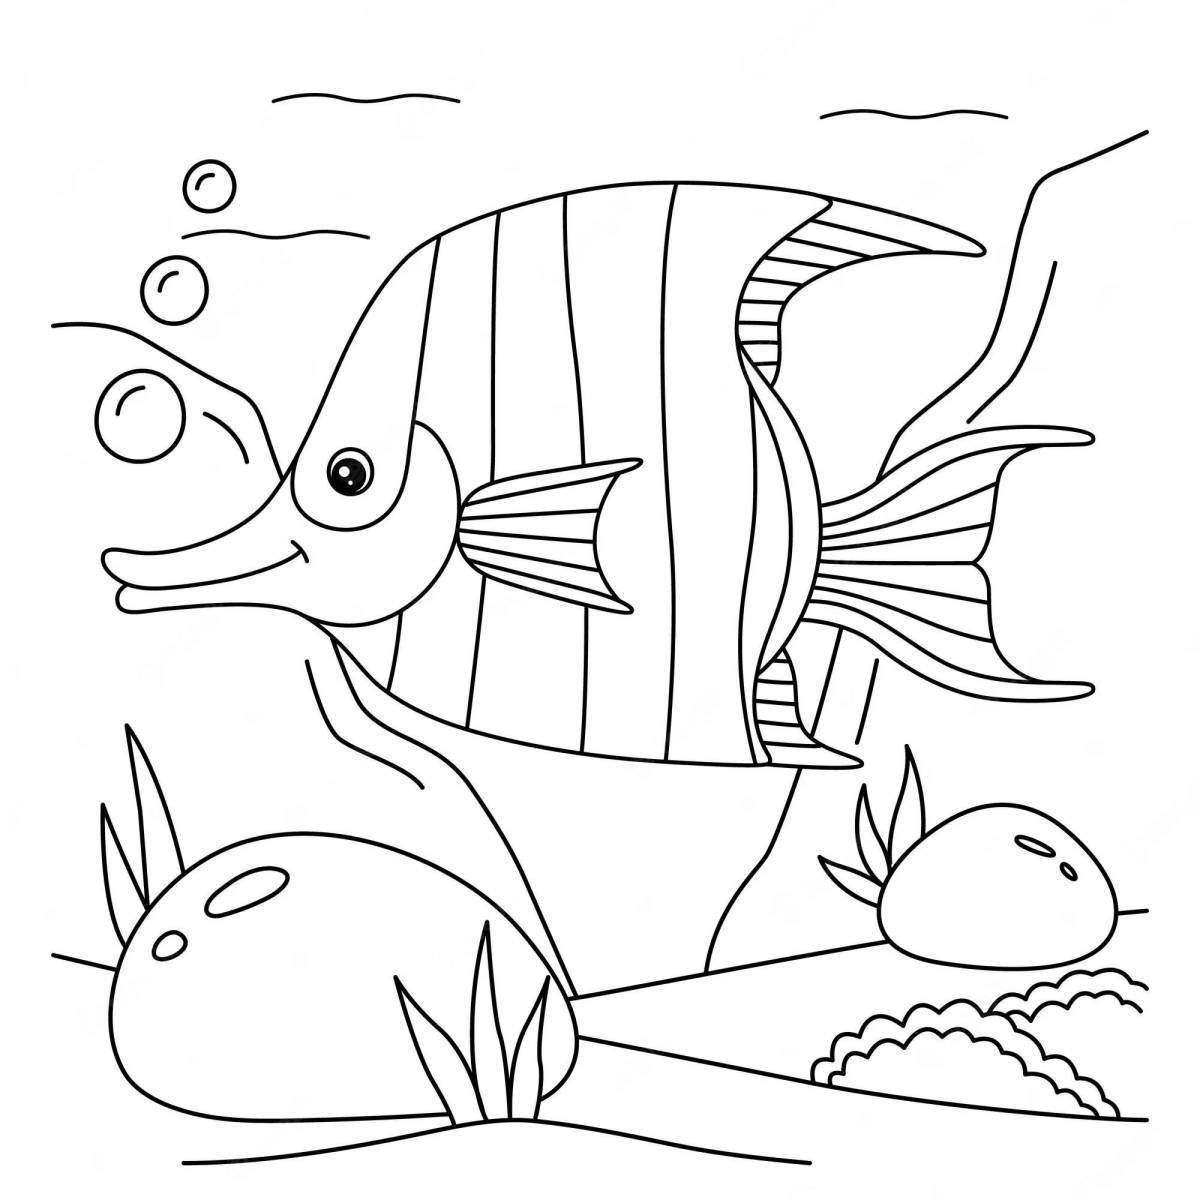 Fish in aquarium #4